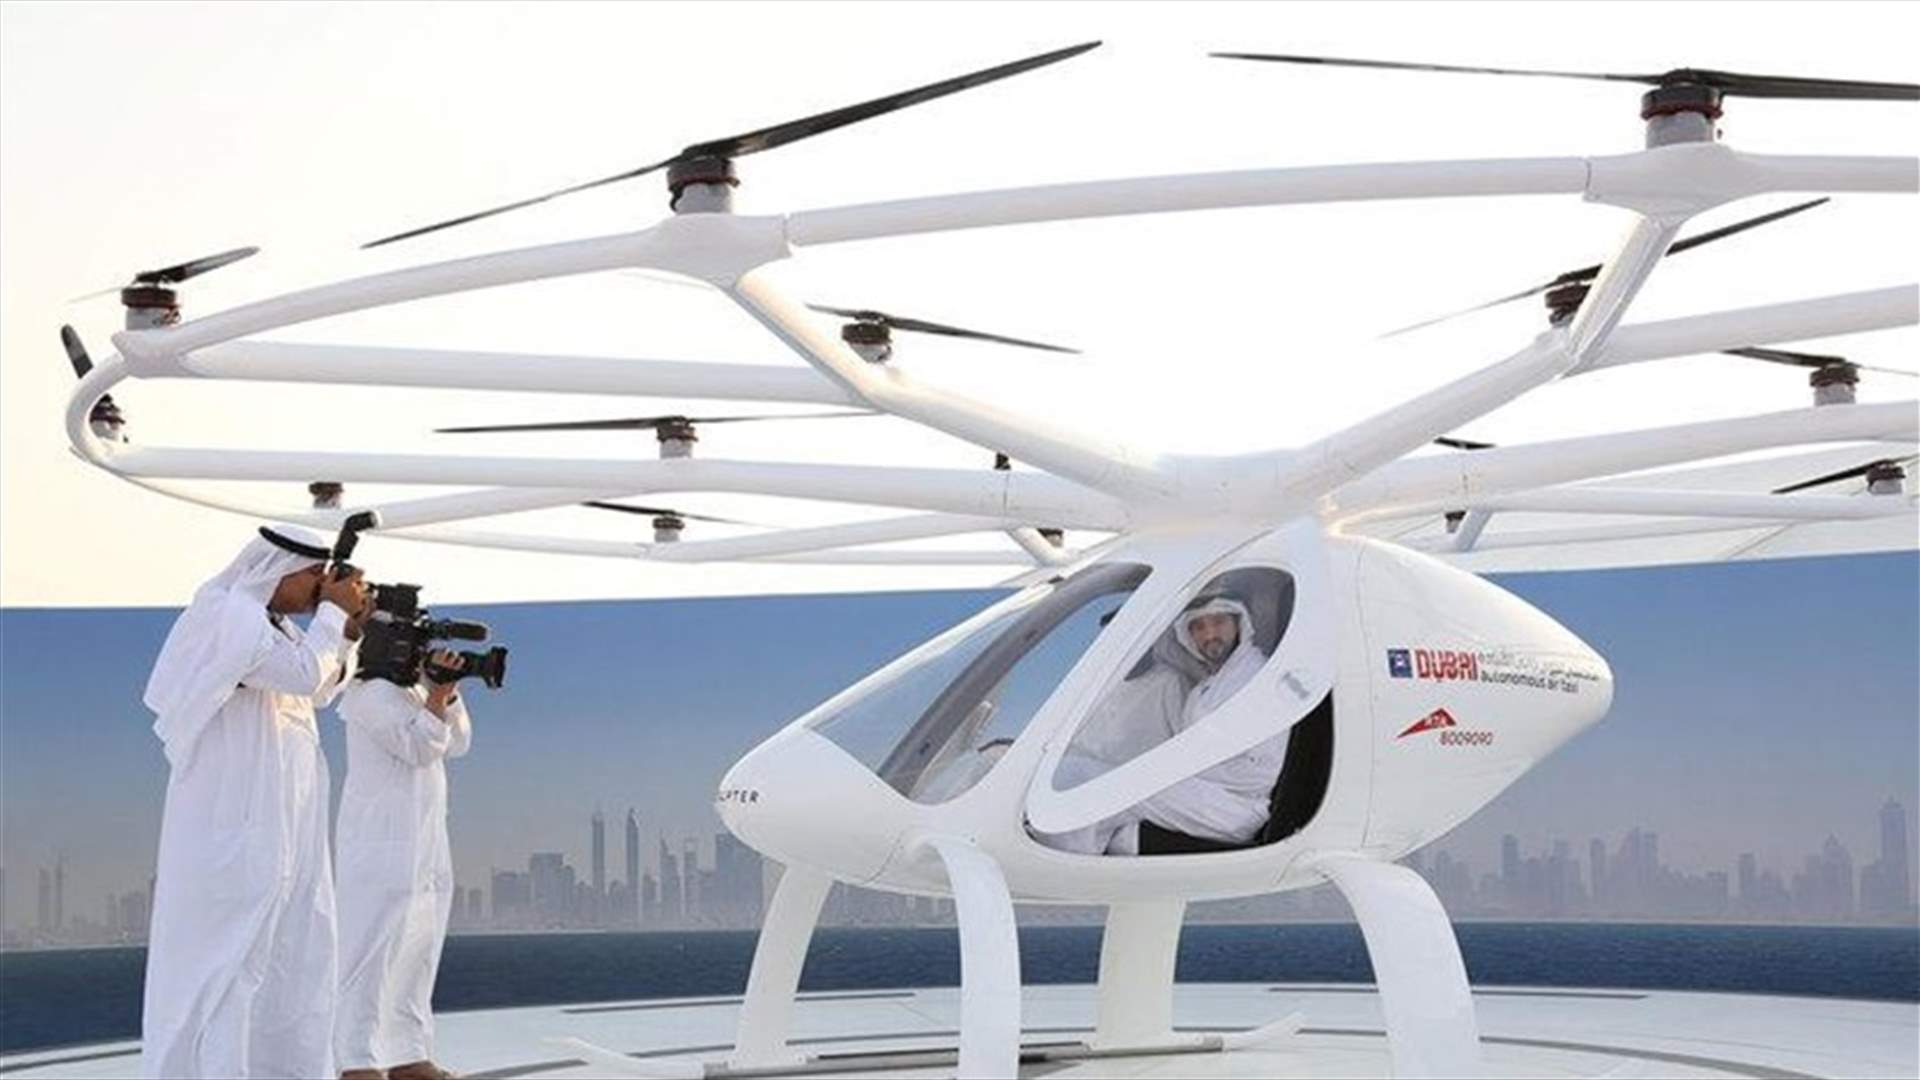 بالفيديو - دبي تختبر أول تاكسي طائر في العالم